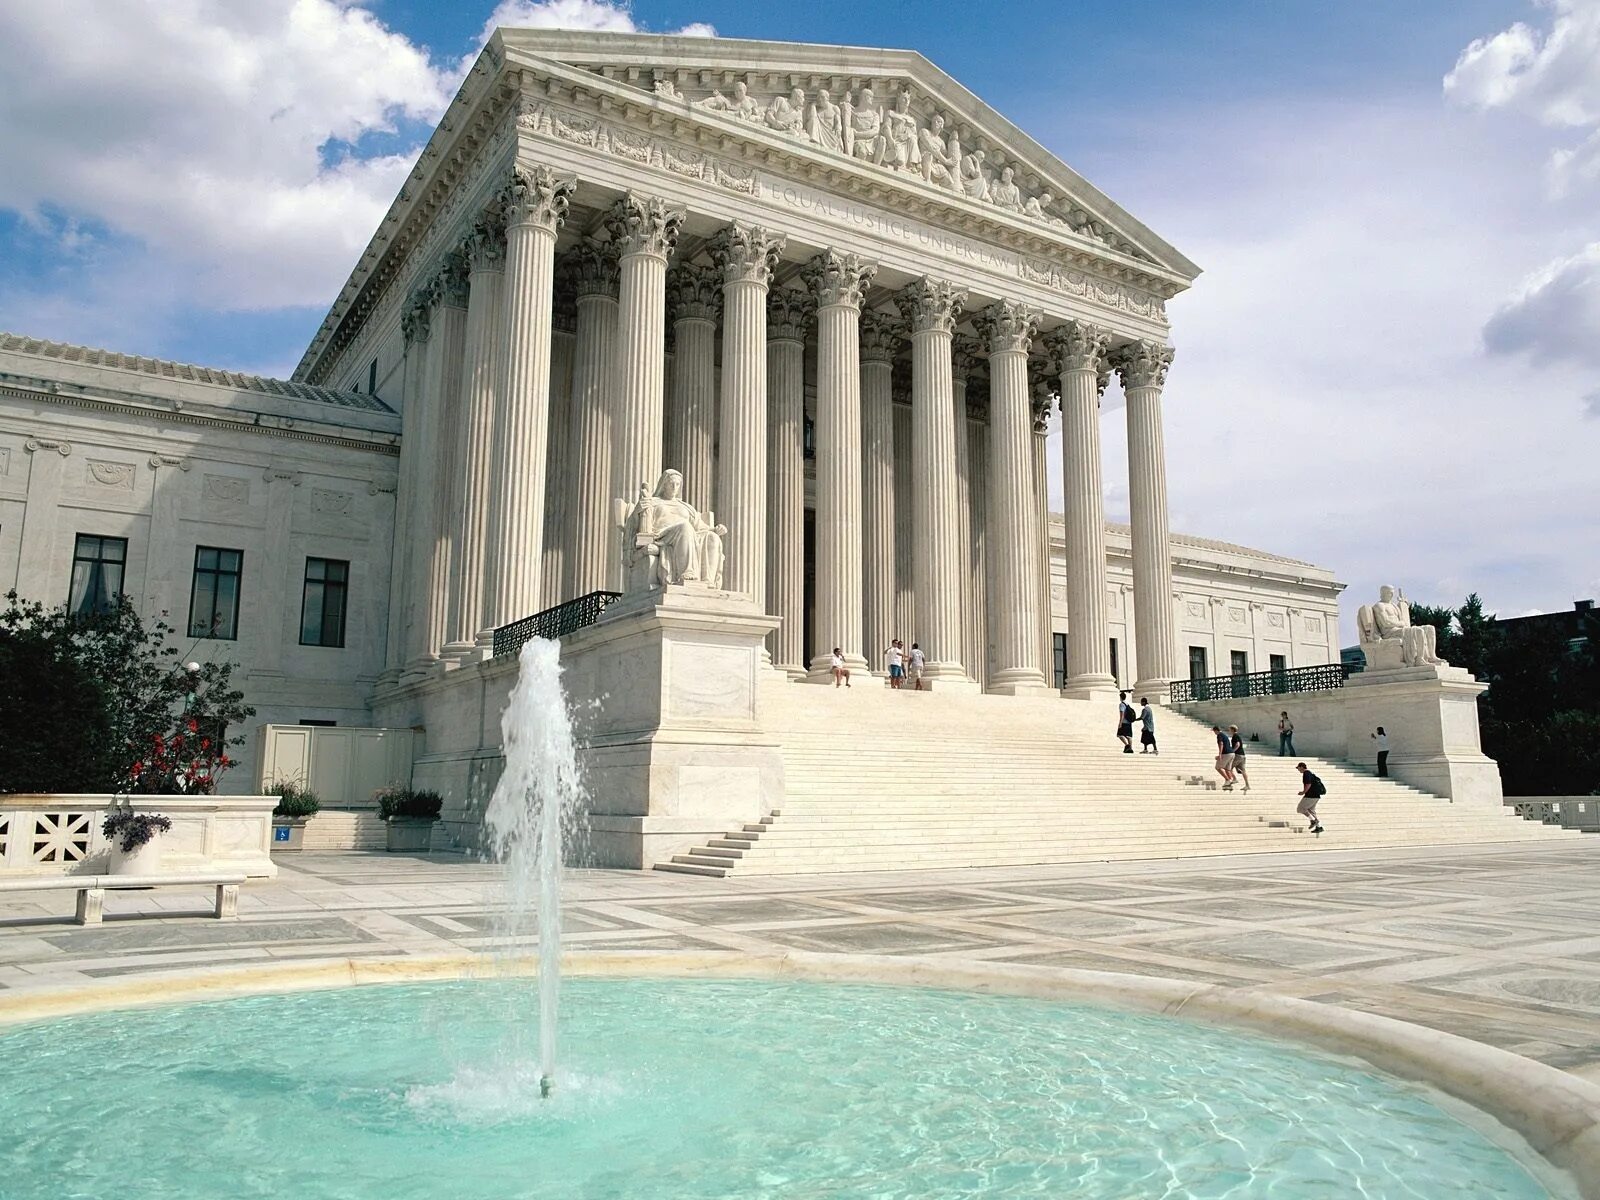 Здания античной архитектуры. Верховный суд США Вашингтон. Капитолий Греция. Капитолий Вашингтон колонны. Верховный суд Капитолия США Вашингтон.